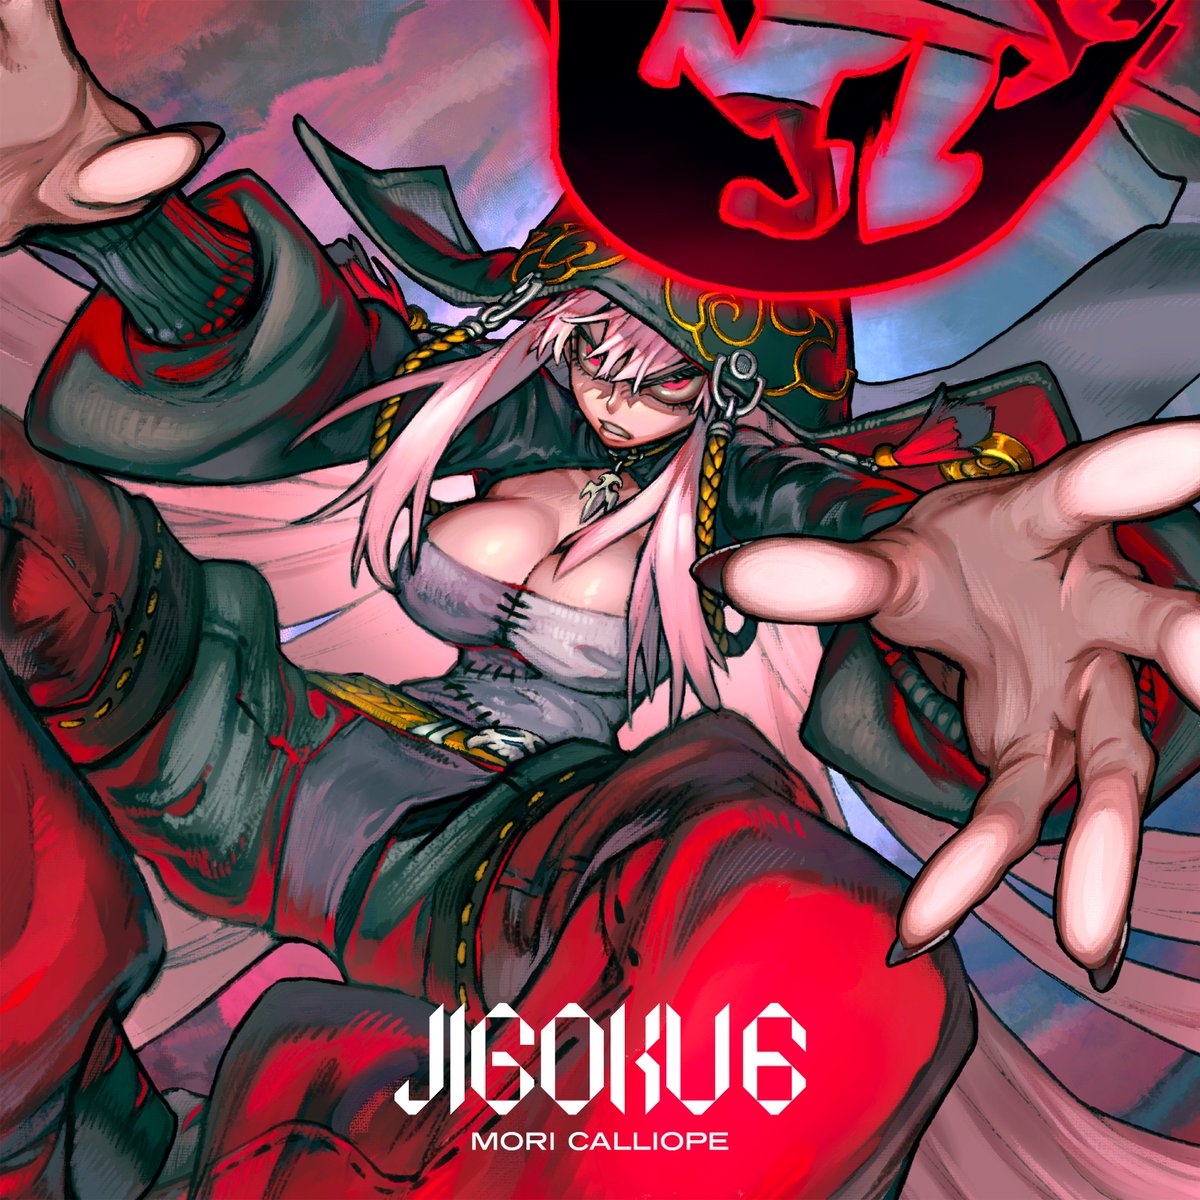 発売中】森カリオペ 4thEP 『JIGOKU 6』 | ホロライブ グッズ情報まとめ